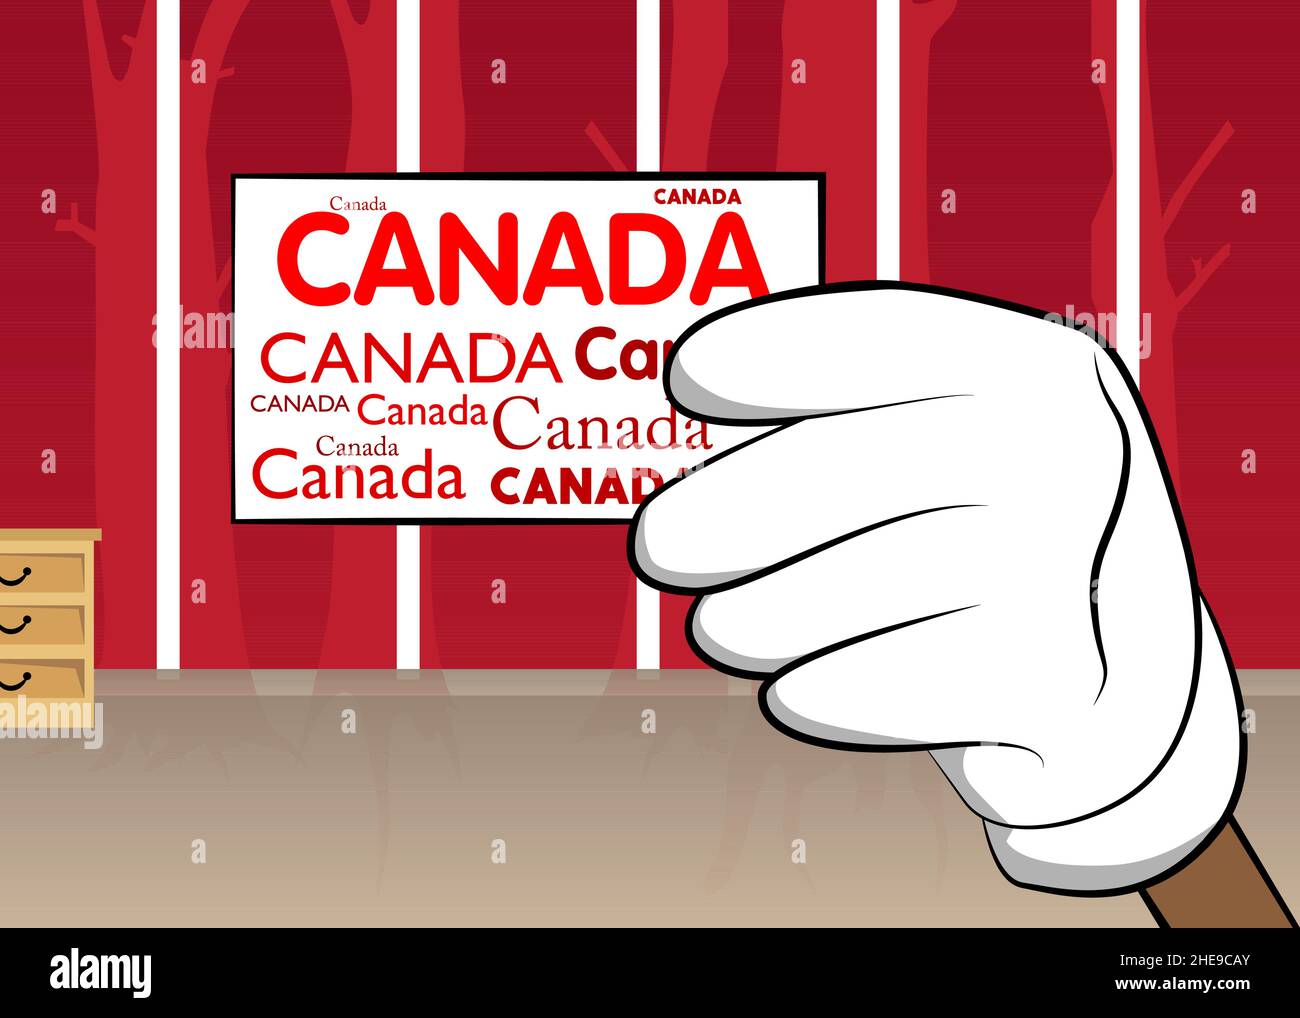 Handgehaltenes Banner mit Text aus Kanada. Die Arme wurden angehoben, um die Plakatwand zu zeigen. Gewerbliches, Pädagogisches Zeichen. Stock Vektor